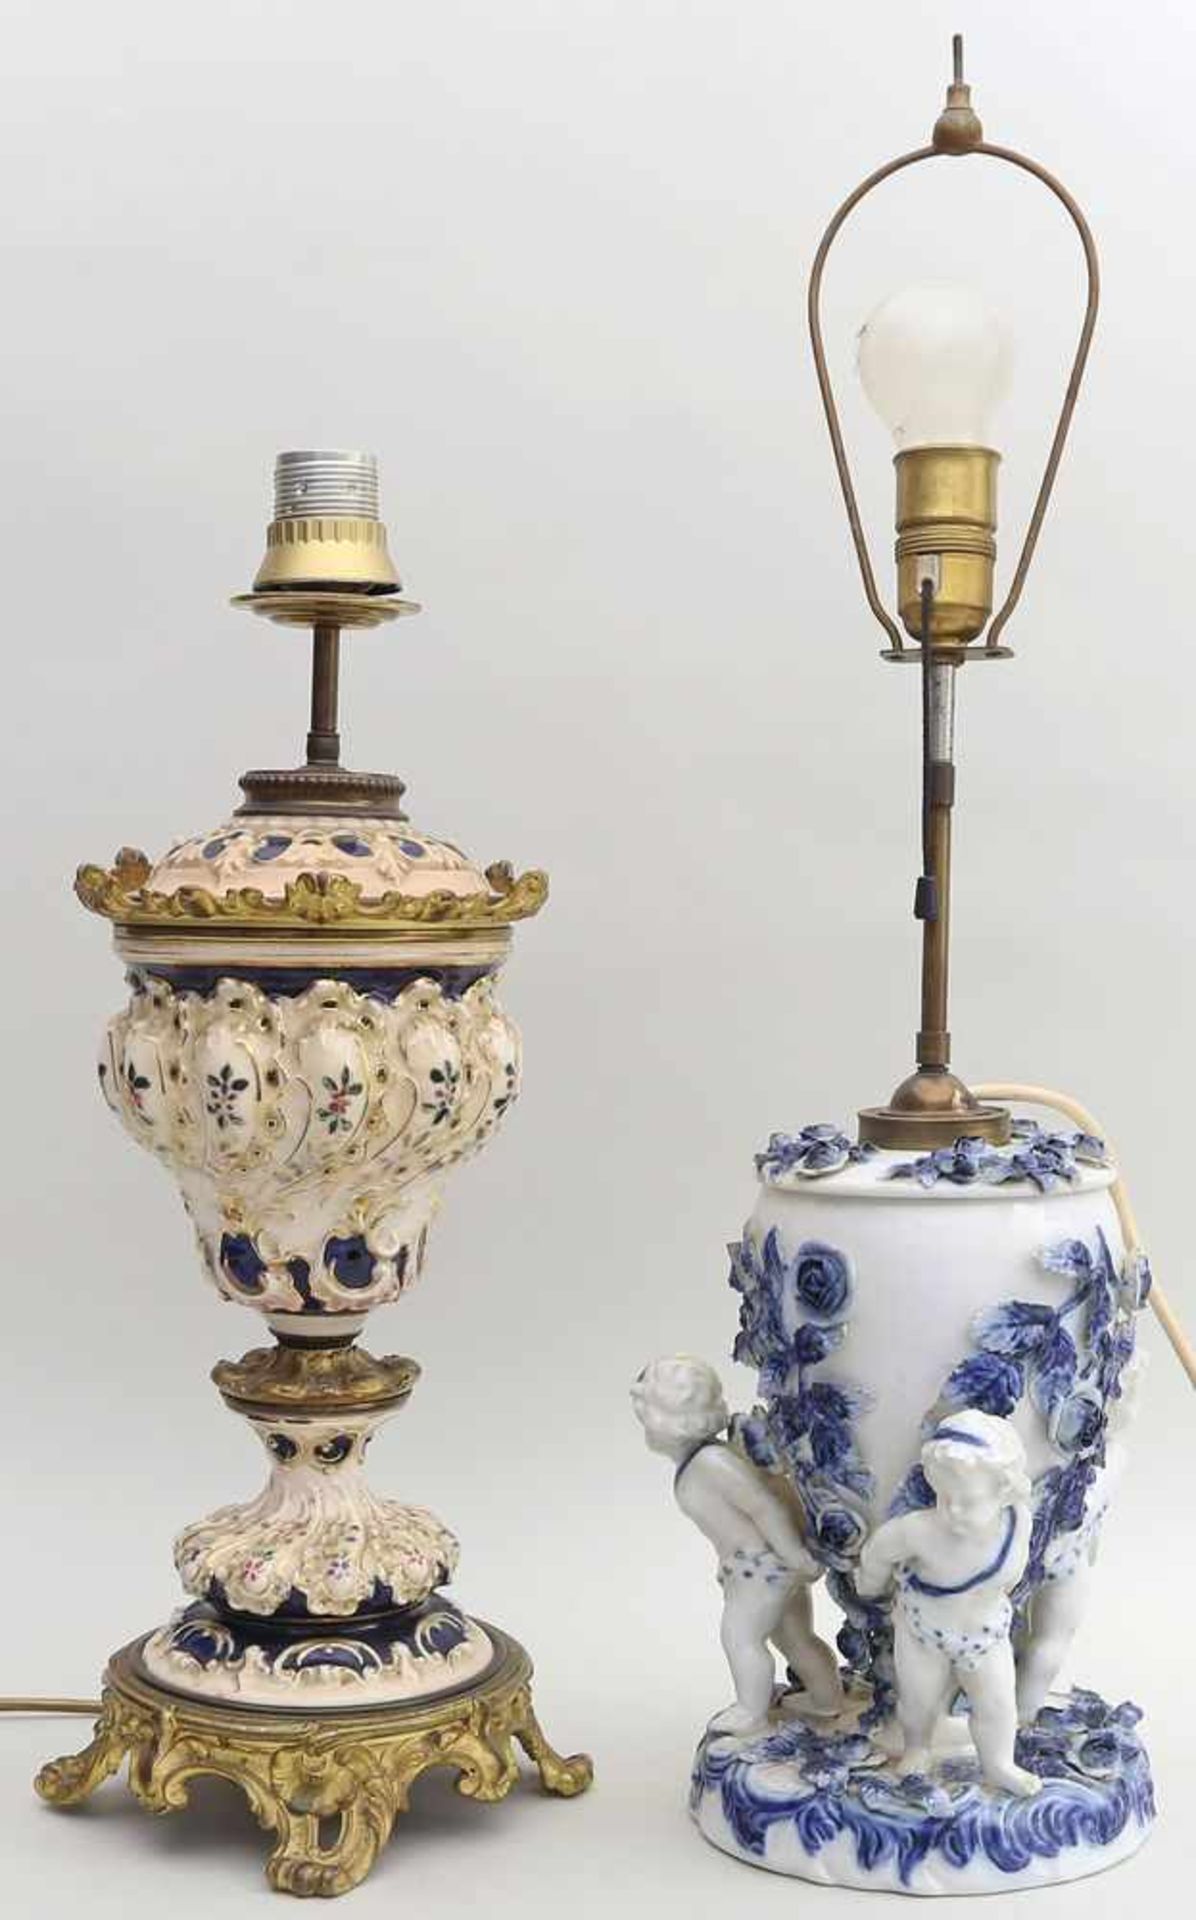 2 Tischleuchten, um 1900.Porzellan/Keramik mit Blaudekor. 1x figürlicher Sockel mit 3 Putten. Besch.